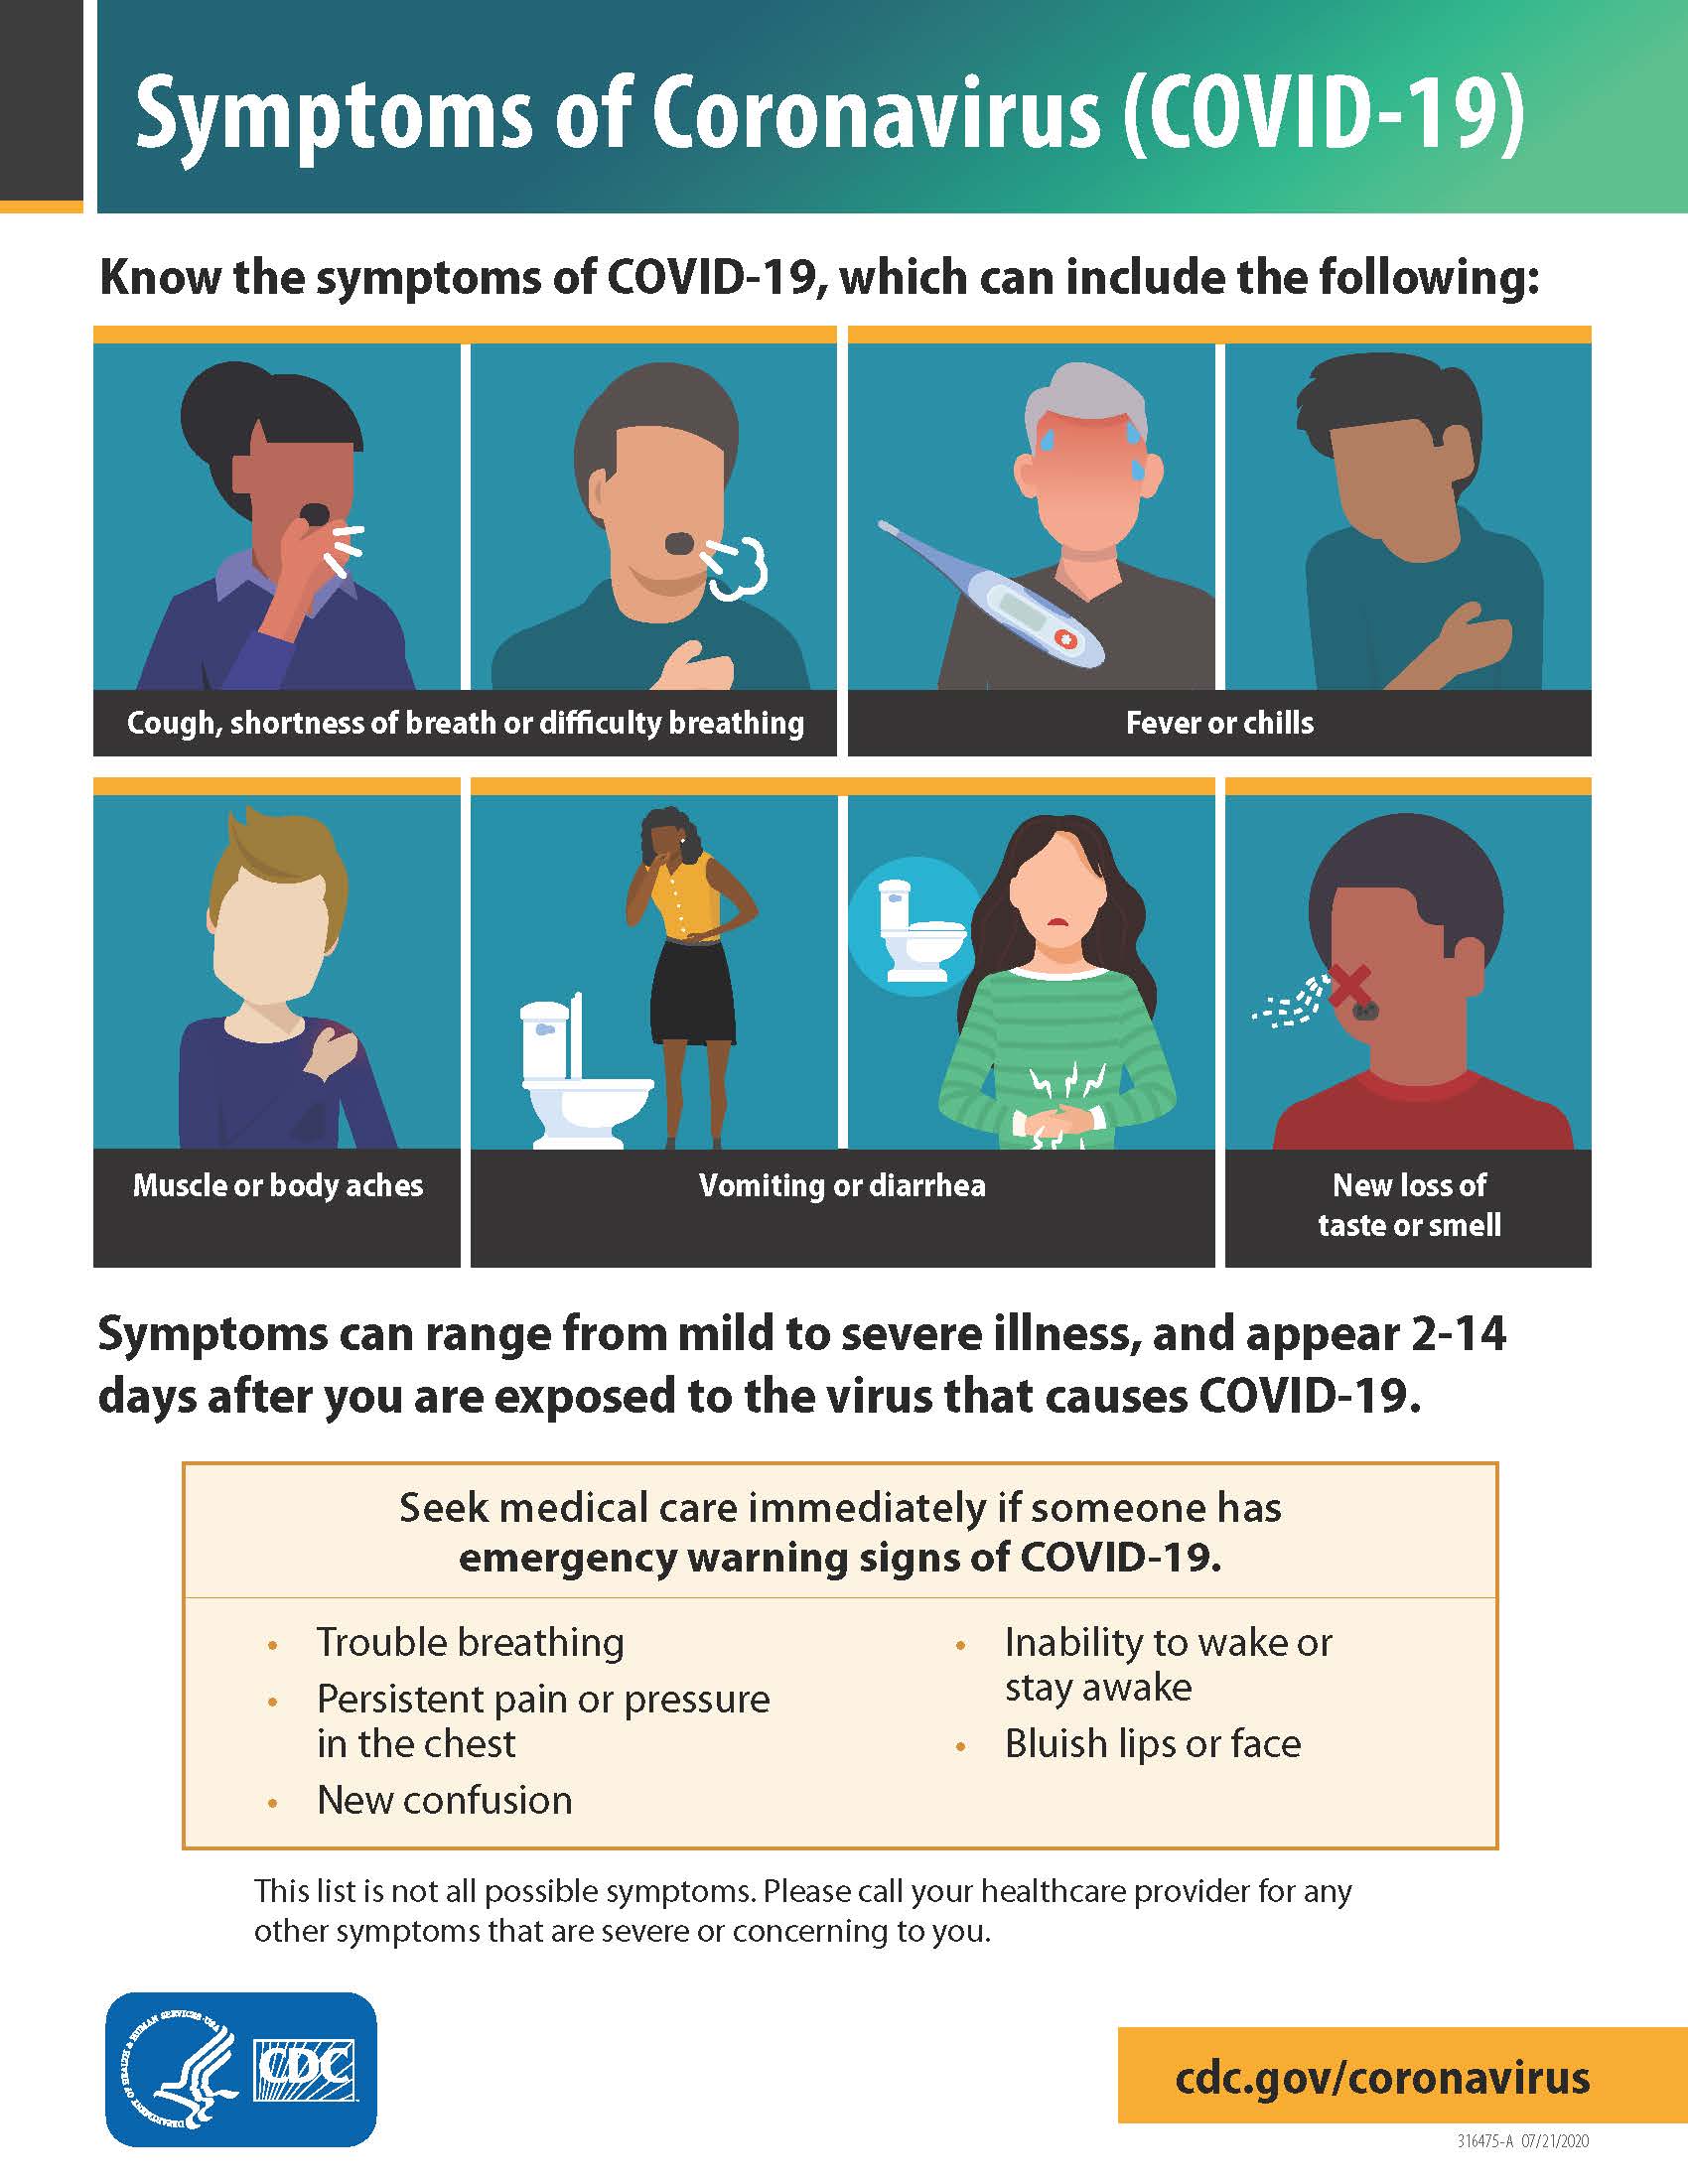 COVID19 symptoms